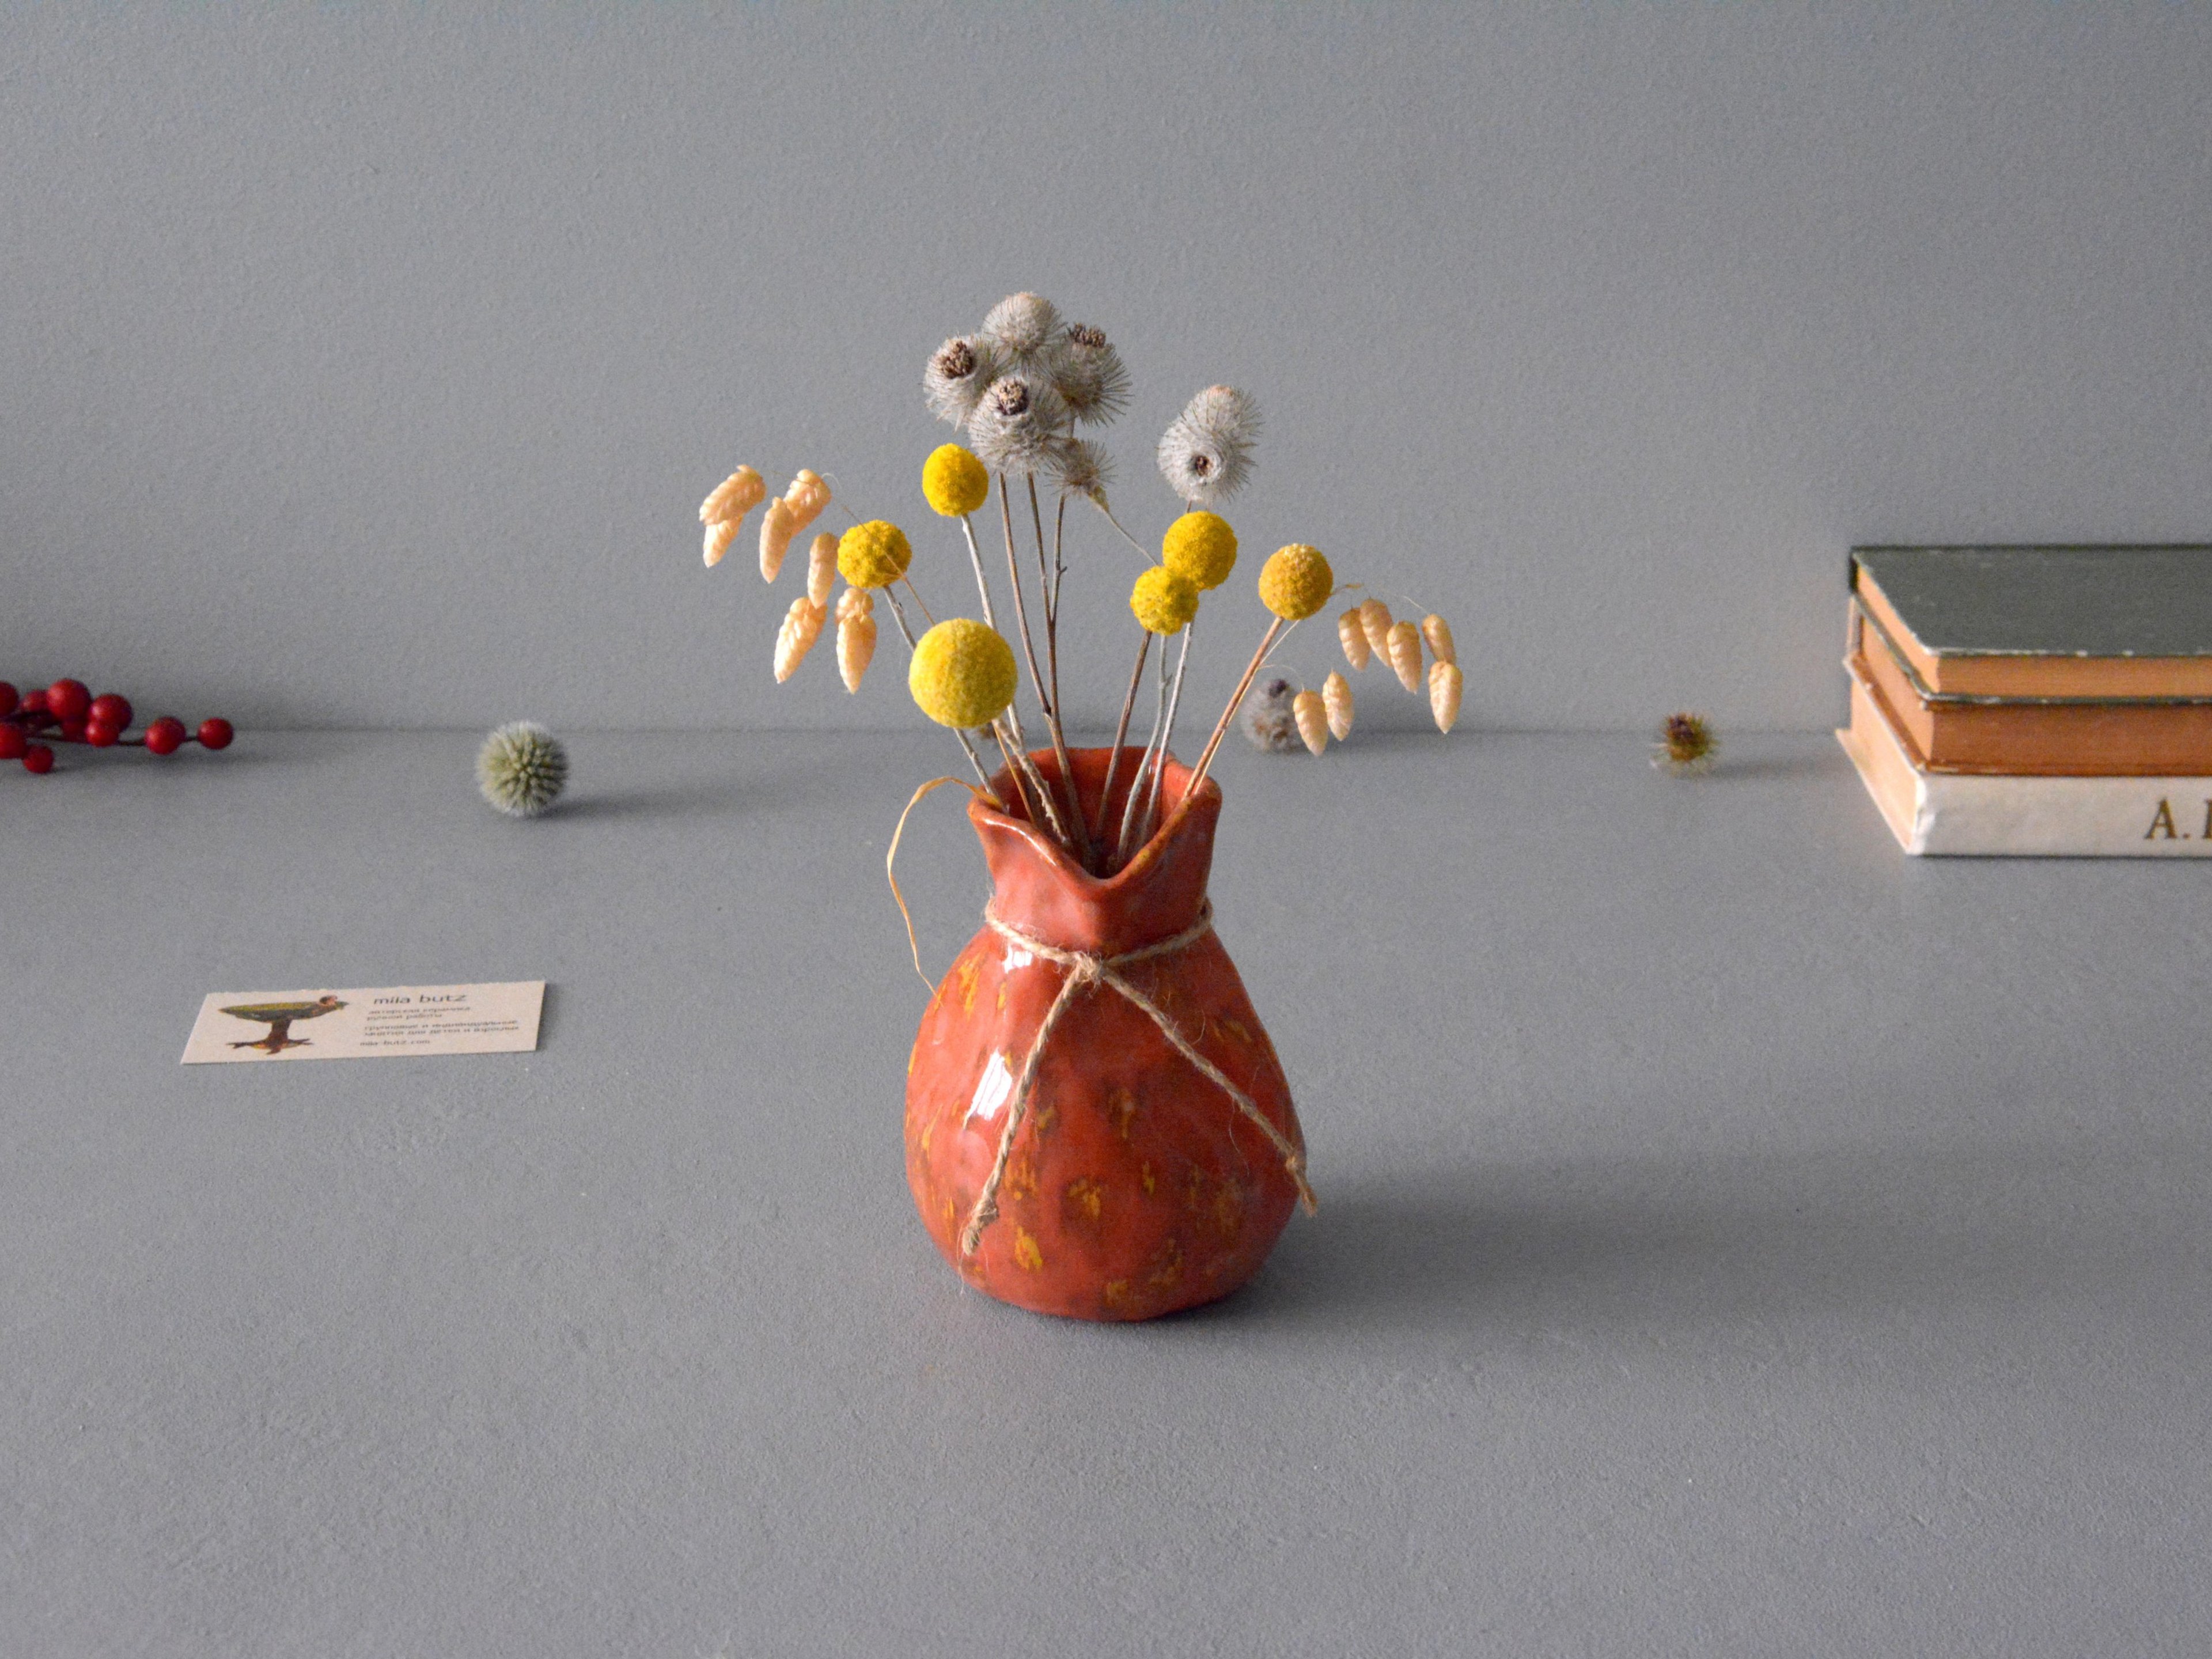 Маленькая вазочка для цветов «Кирпичный с жёлтым Мешочек», высота - 12 см. Фото 1298-3840-2880.